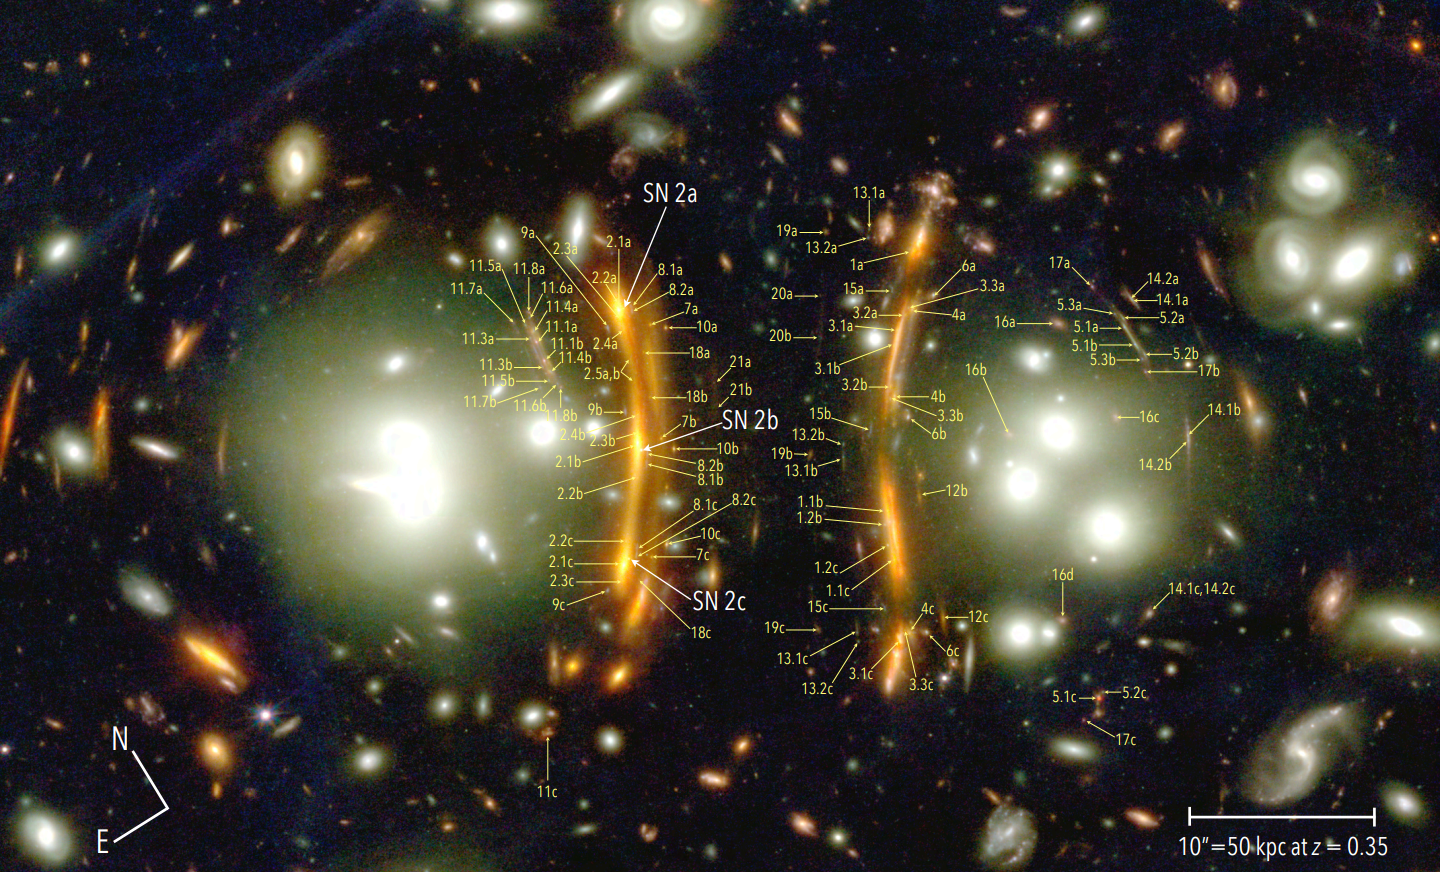 Na ilustracji (2): Pokazano centralny obszar gromady galaktyk PLCK G165.7+67.0 (w skrócie G165) z podwójnym jądrem oznaczonym w-g położenia na niebie NE i SW oraz oznaczono etykietami struktury soczewkowane przez G165. Na zdjęciu zidentyfikowano przynajmniej 21 takich niezależnych, wielokrotnych źródeł światła zwanych systemami/układami obrazów, które zostały ponumerowane.  Źródło (CC BY 4.0): arXiv:2309.07326 [astro-ph.GA]